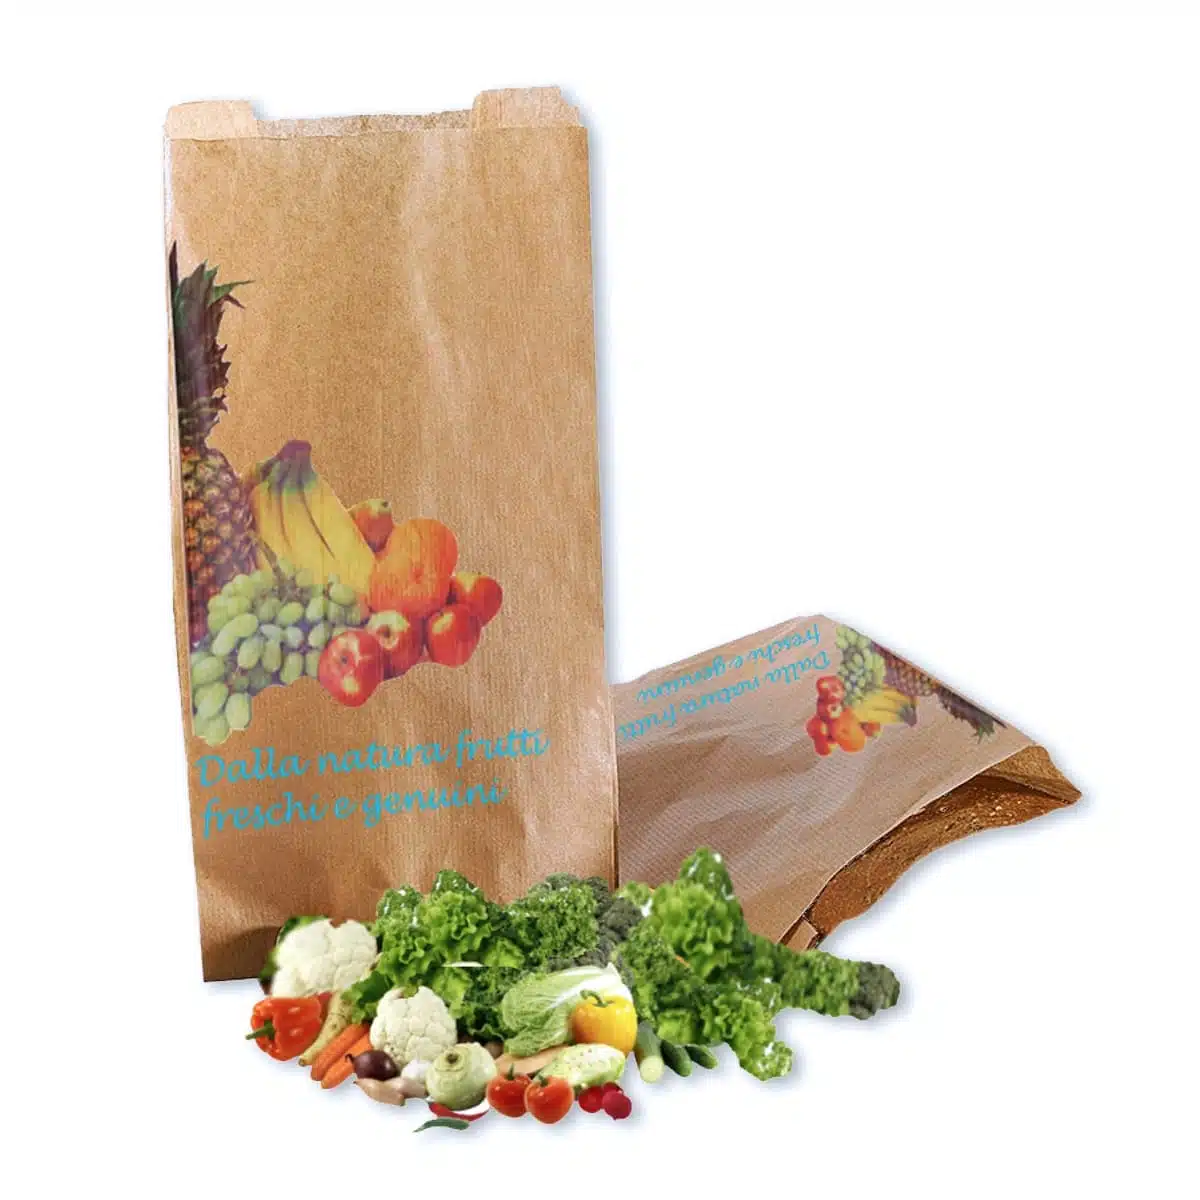 sacchetti carta per frutta e verdura